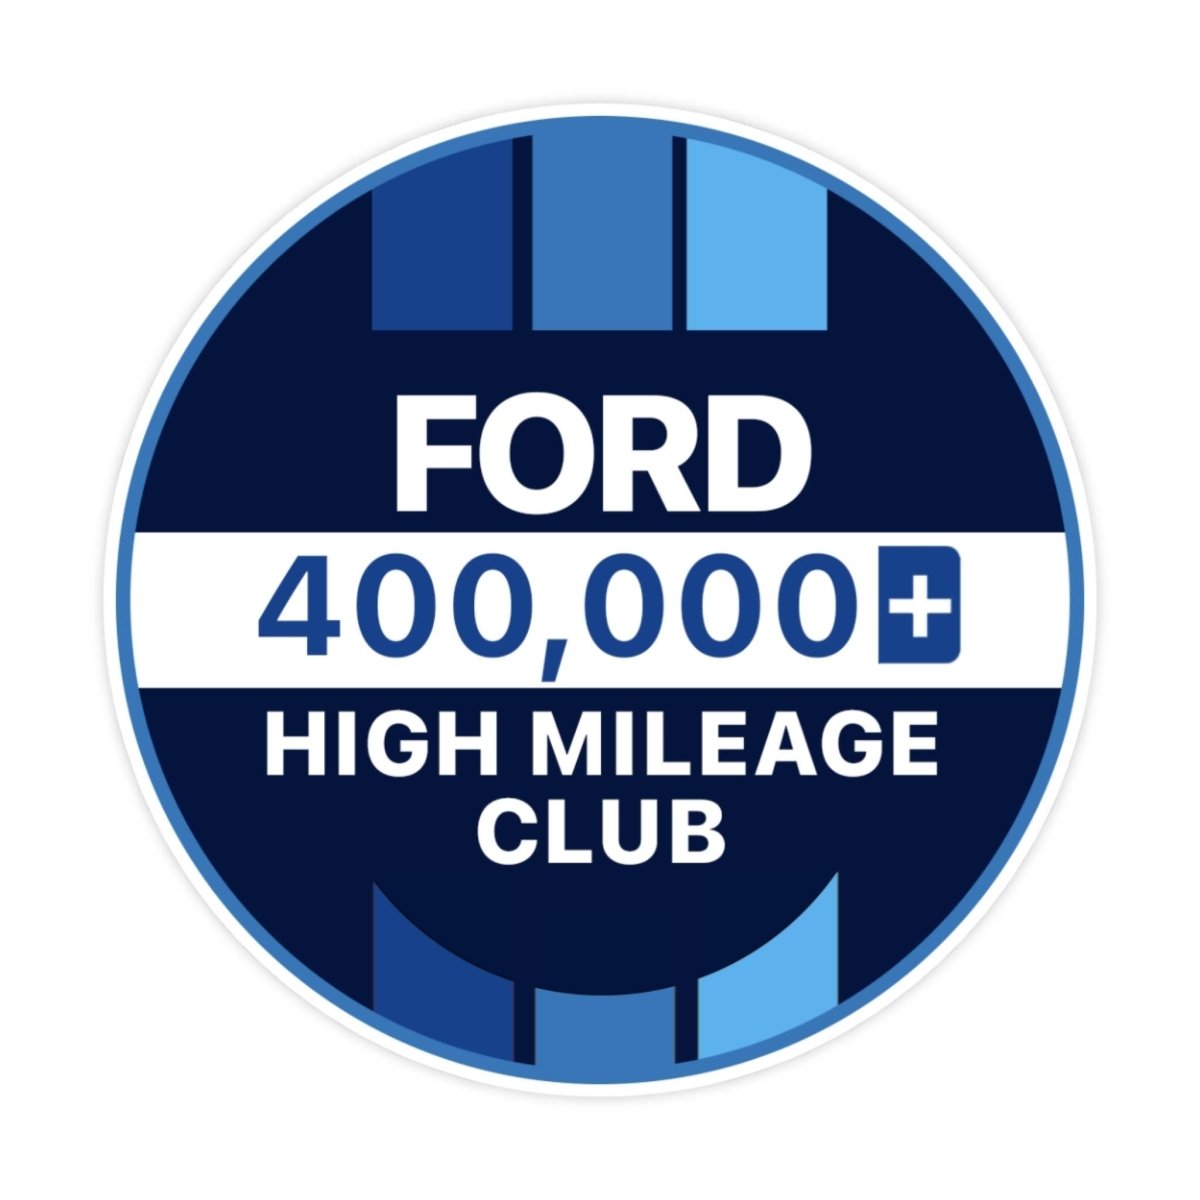 Ford 300k High Mileage Club Sticker - stickerbullFord 300k High Mileage Club StickerRetail StickerstickerbullstickerbullTaylor_Ford400k [#121]400kFord 300k High Mileage Club Sticker